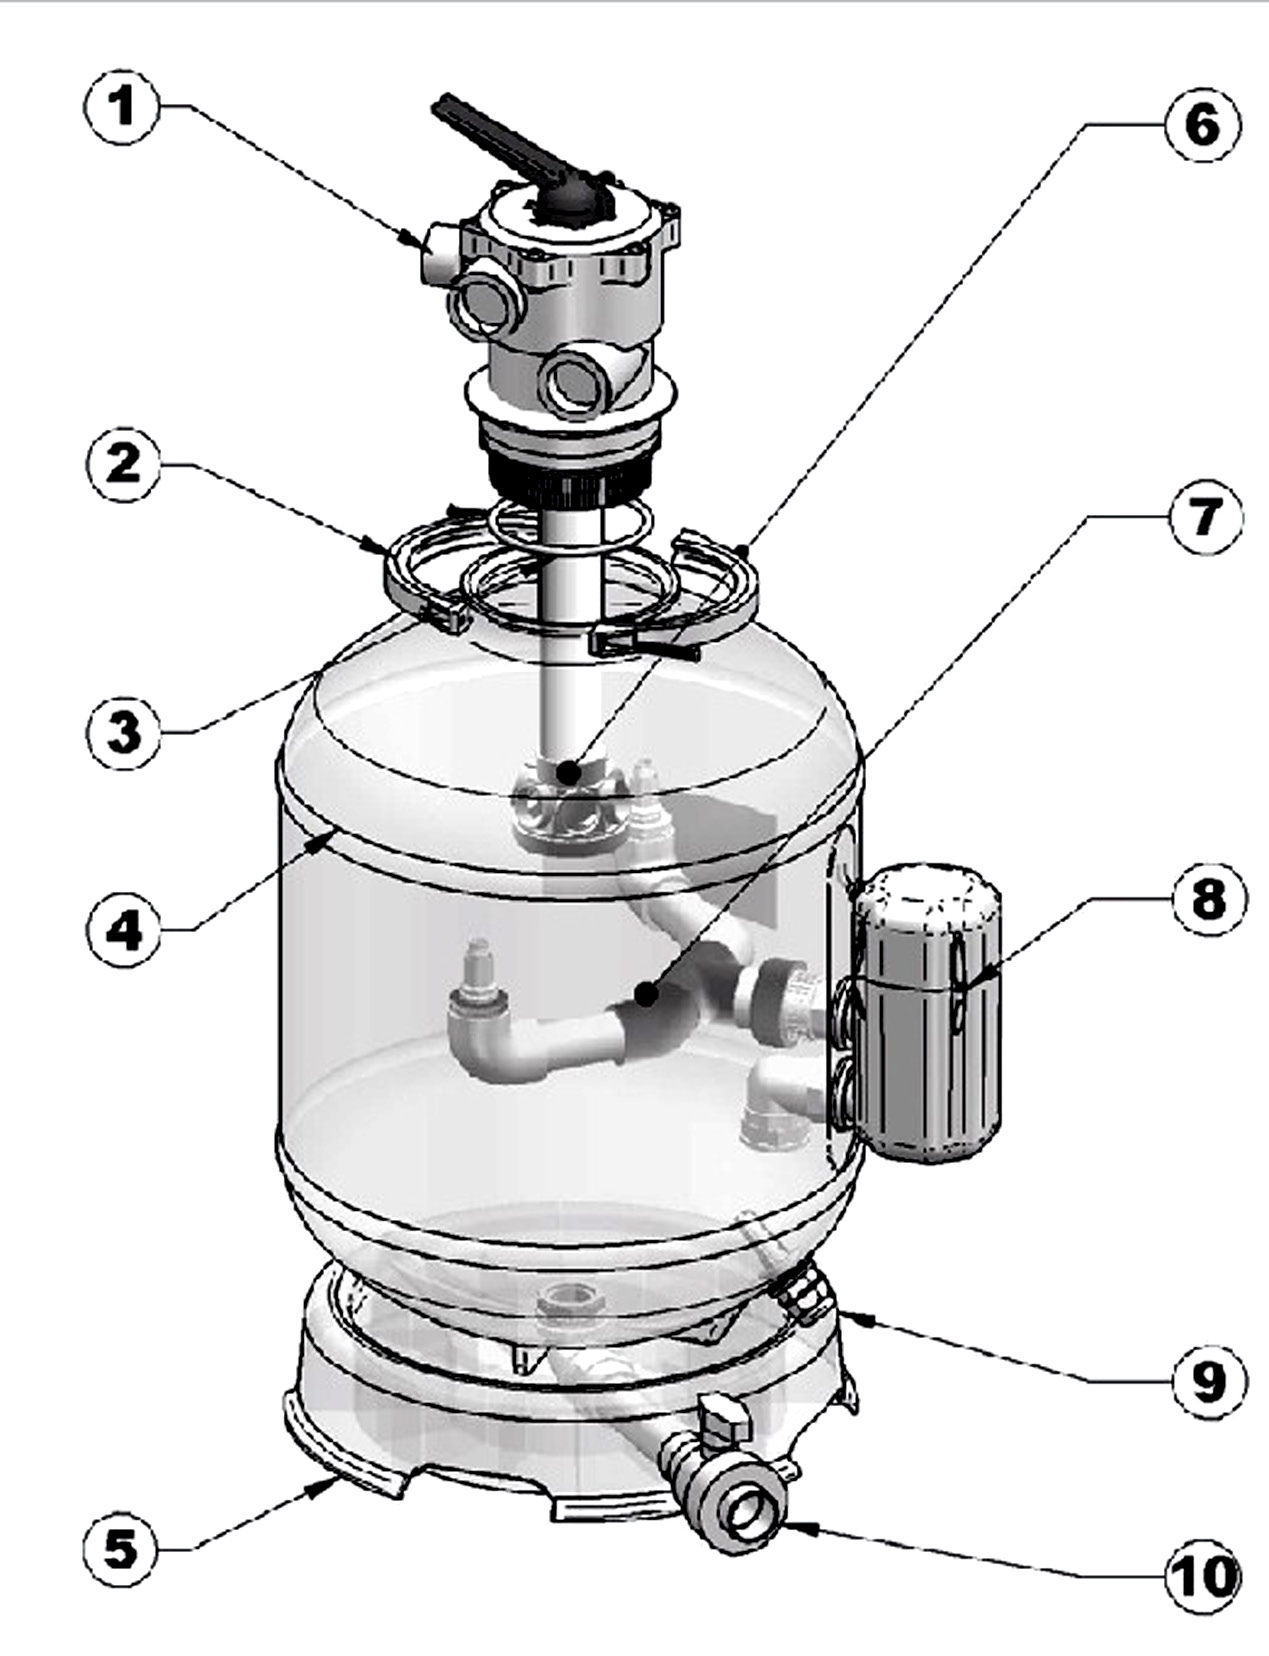 Filter beskrivning 1-Sexvägsventil 2-Spännring 3- Mjuk O-Ring för tätning 4-Behållare 5-Bottenplatta med avtappningskran 6-Rör med boll 7-Interna munstycken 8-Rensnings system 9-Dräneringsmutter inkl.